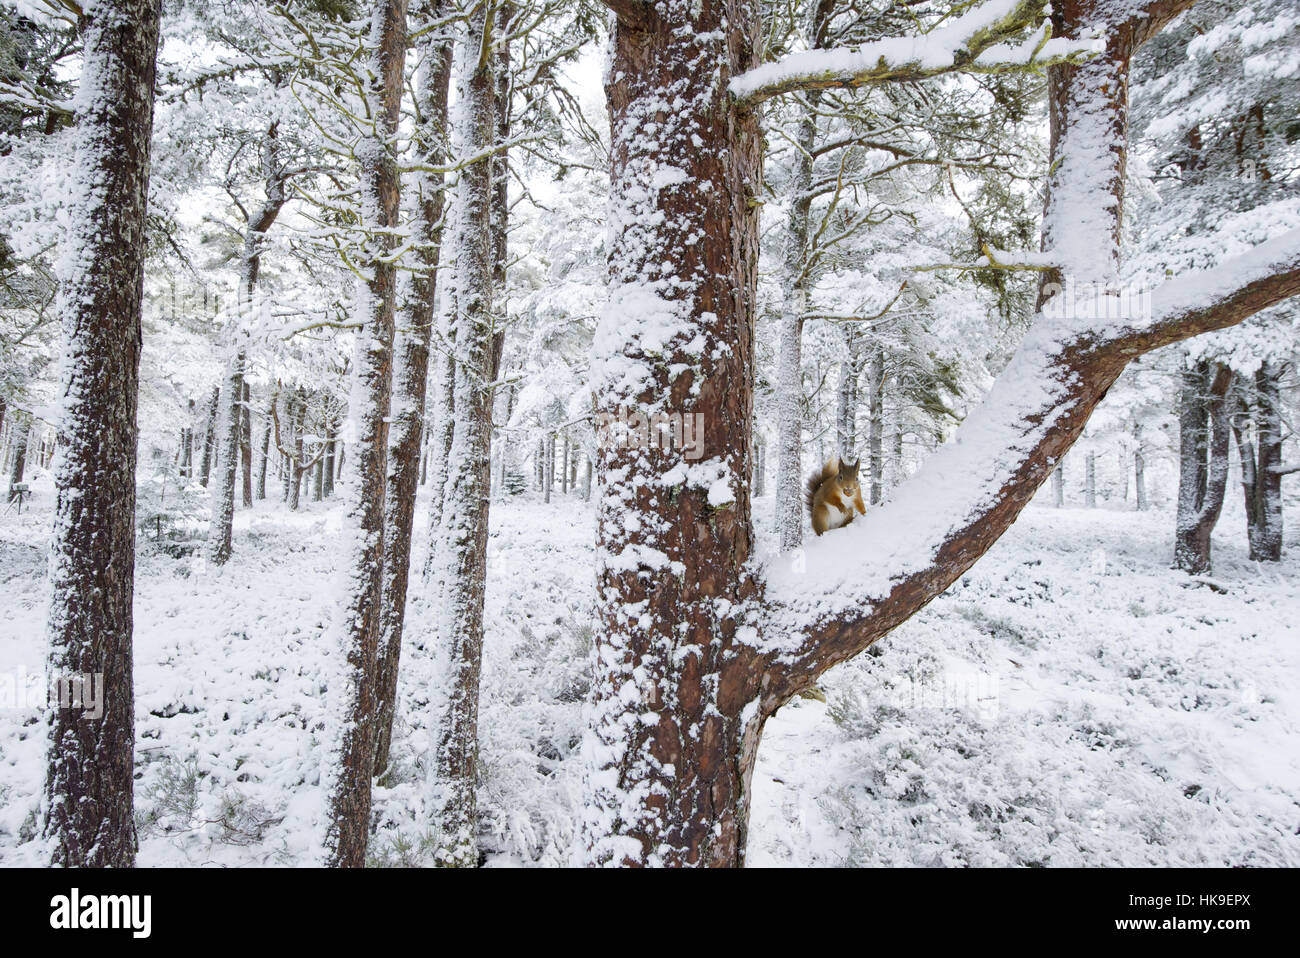 Red scoiattolo (Sciurus vulgaris) su Pino silvestre albero nella neve. Black Isle, Scotland, Regno Unito. Gennaio 2016 Foto Stock